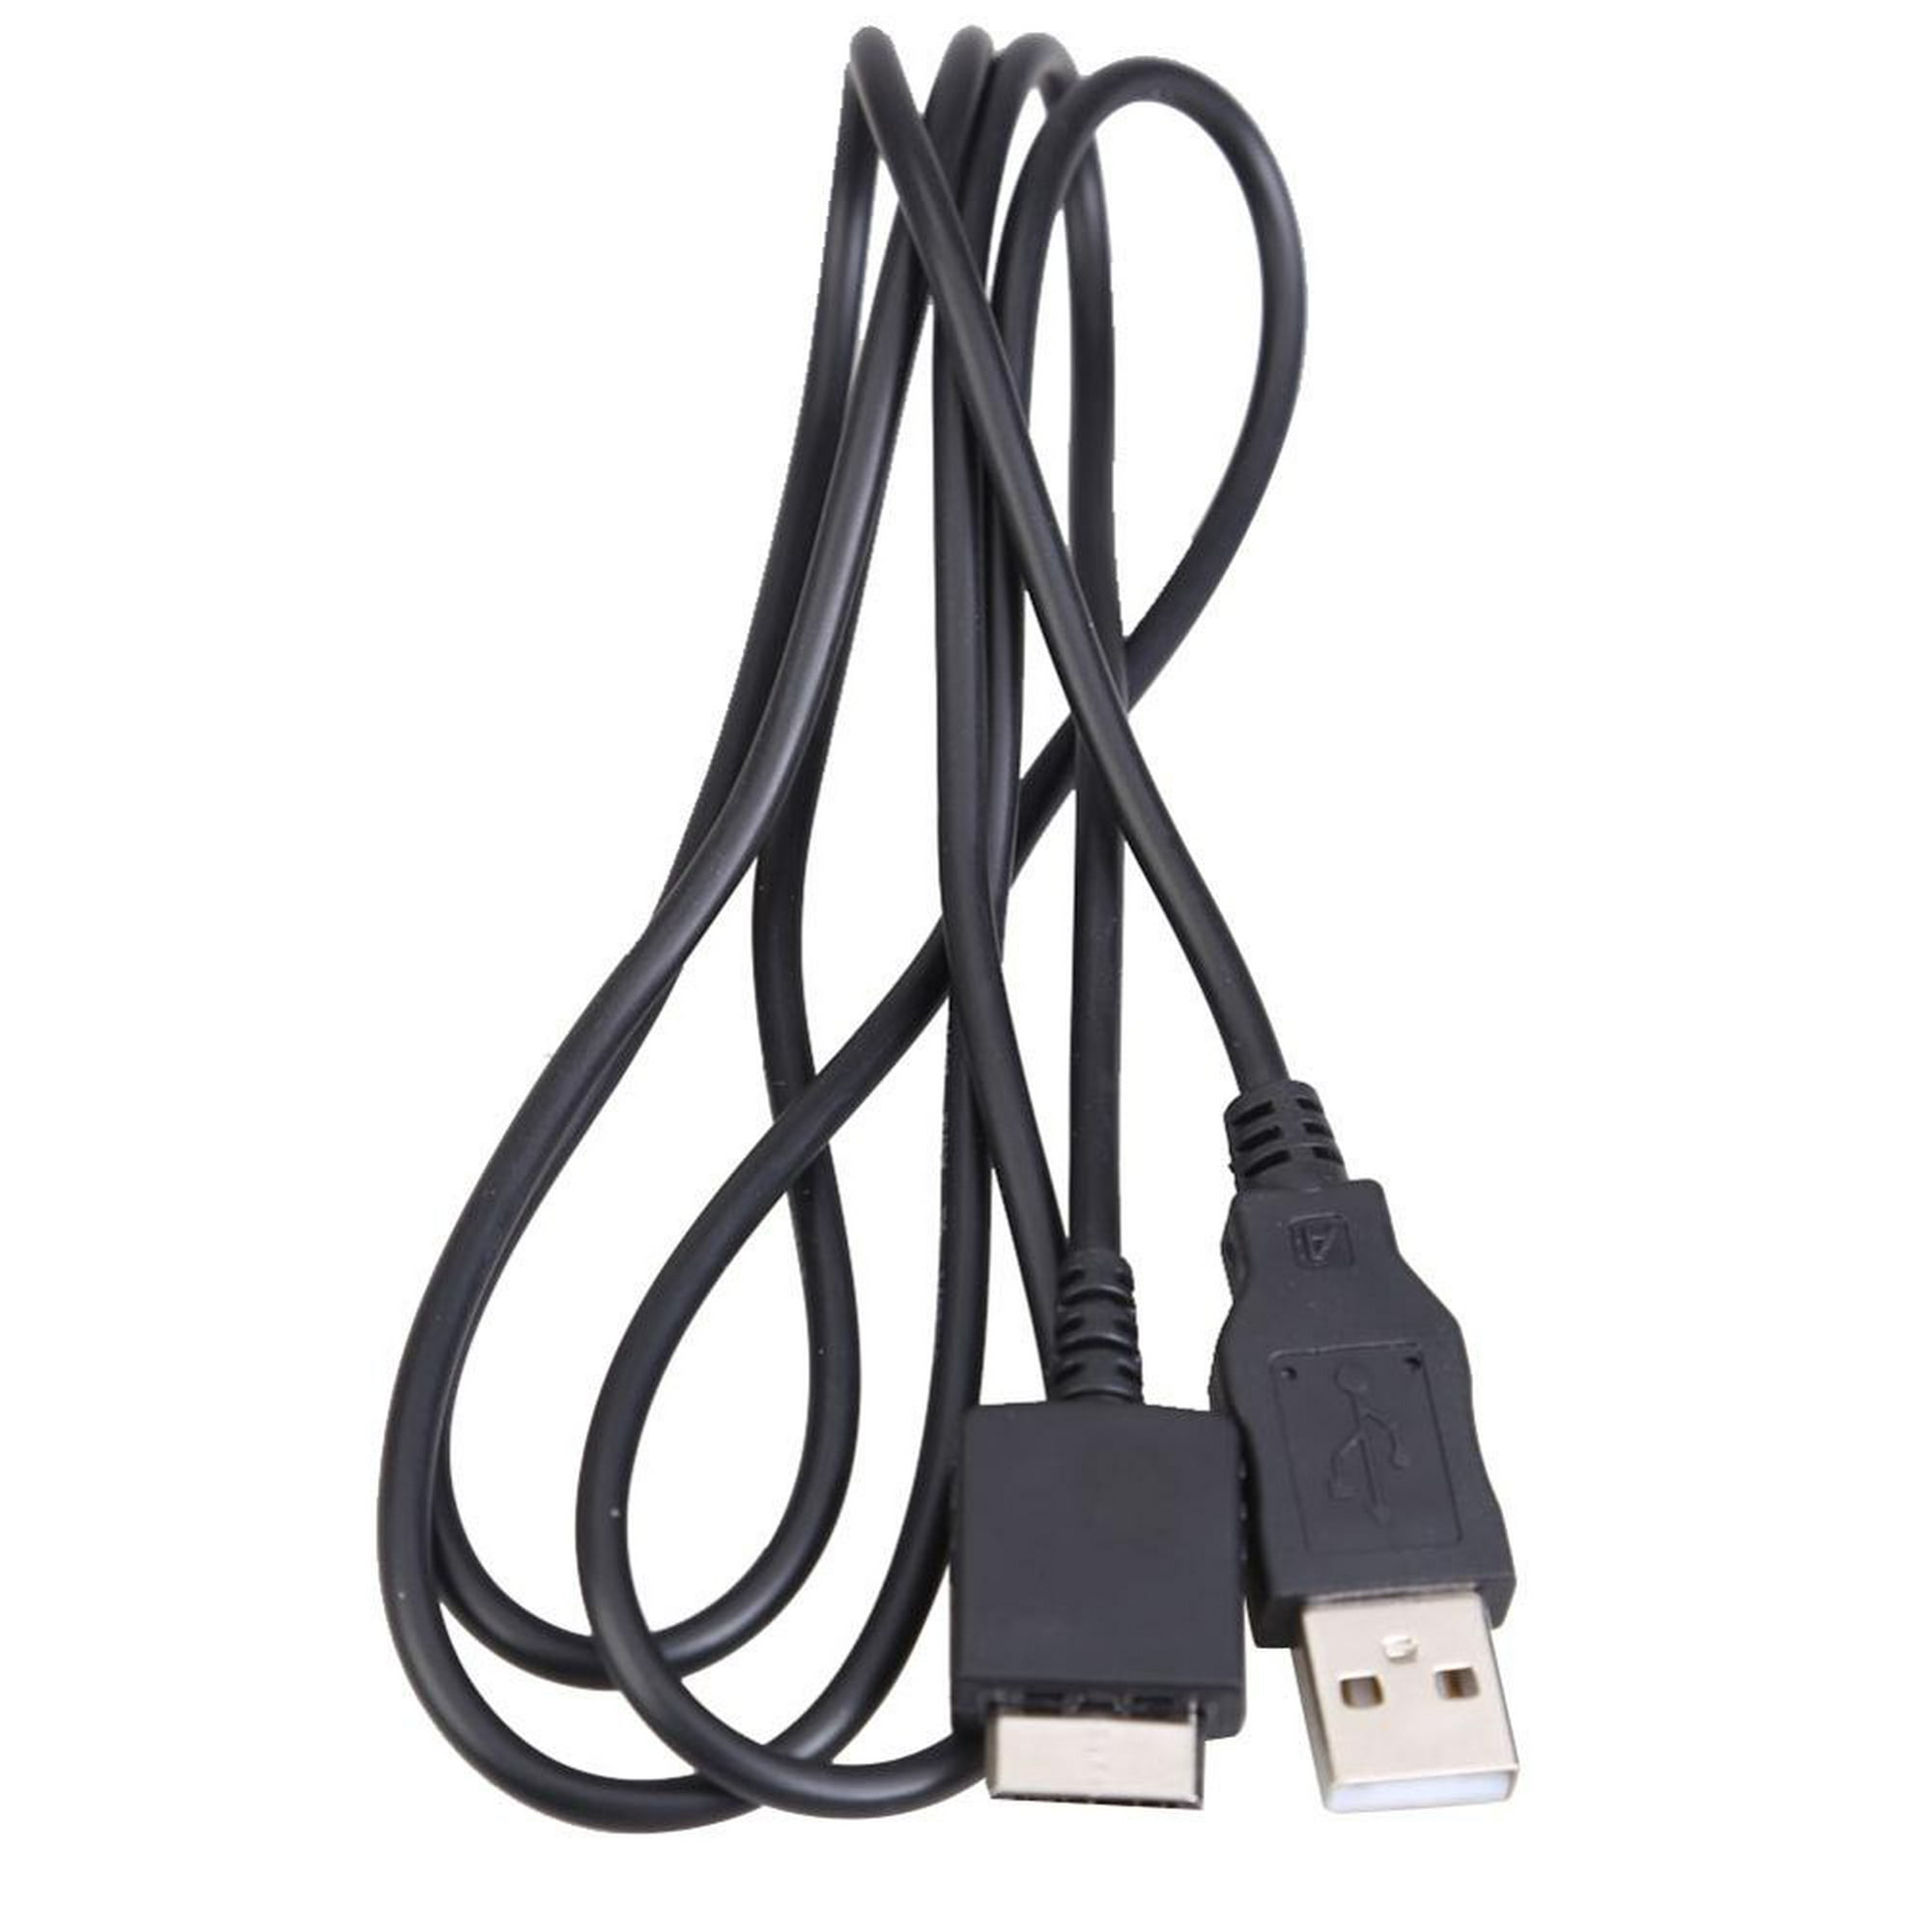 Cable cargador de sincronización de datos USB 2PCS para Apple iPhone 4 4s  3G iPhone iPod Nano